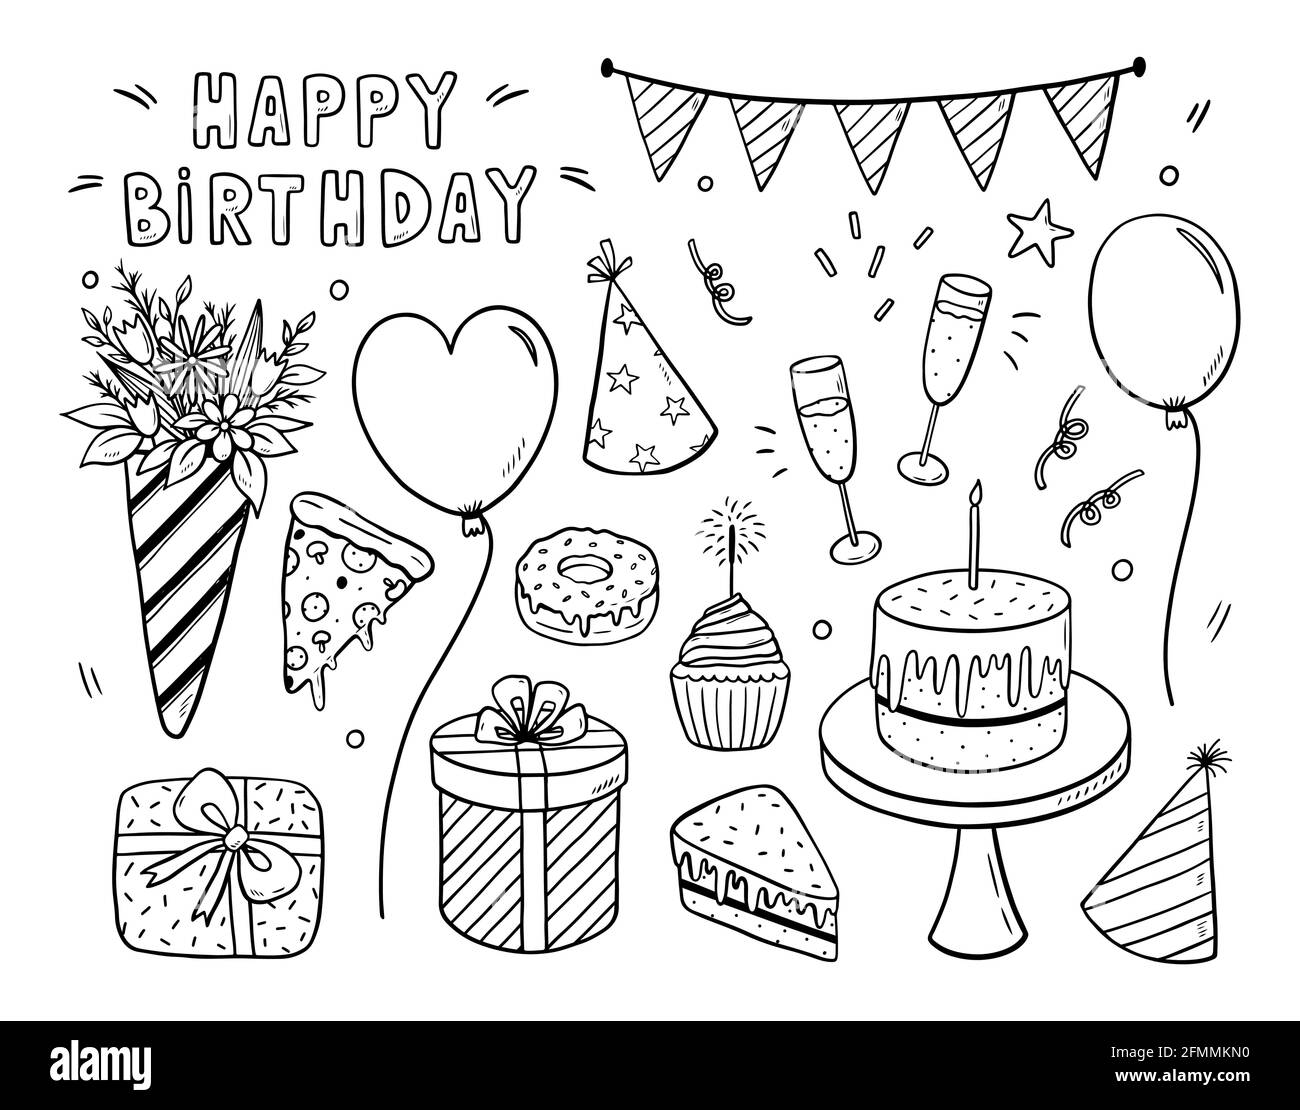 Insieme di doodle vettoriali di elementi di disegno di compleanno. Feste  bandiere, cappelli, palloncini, regali, fiori, bicchieri di champagne,  confetti, dolci e una grande torta di compleanno con una candela.  Illustrazione disegnata